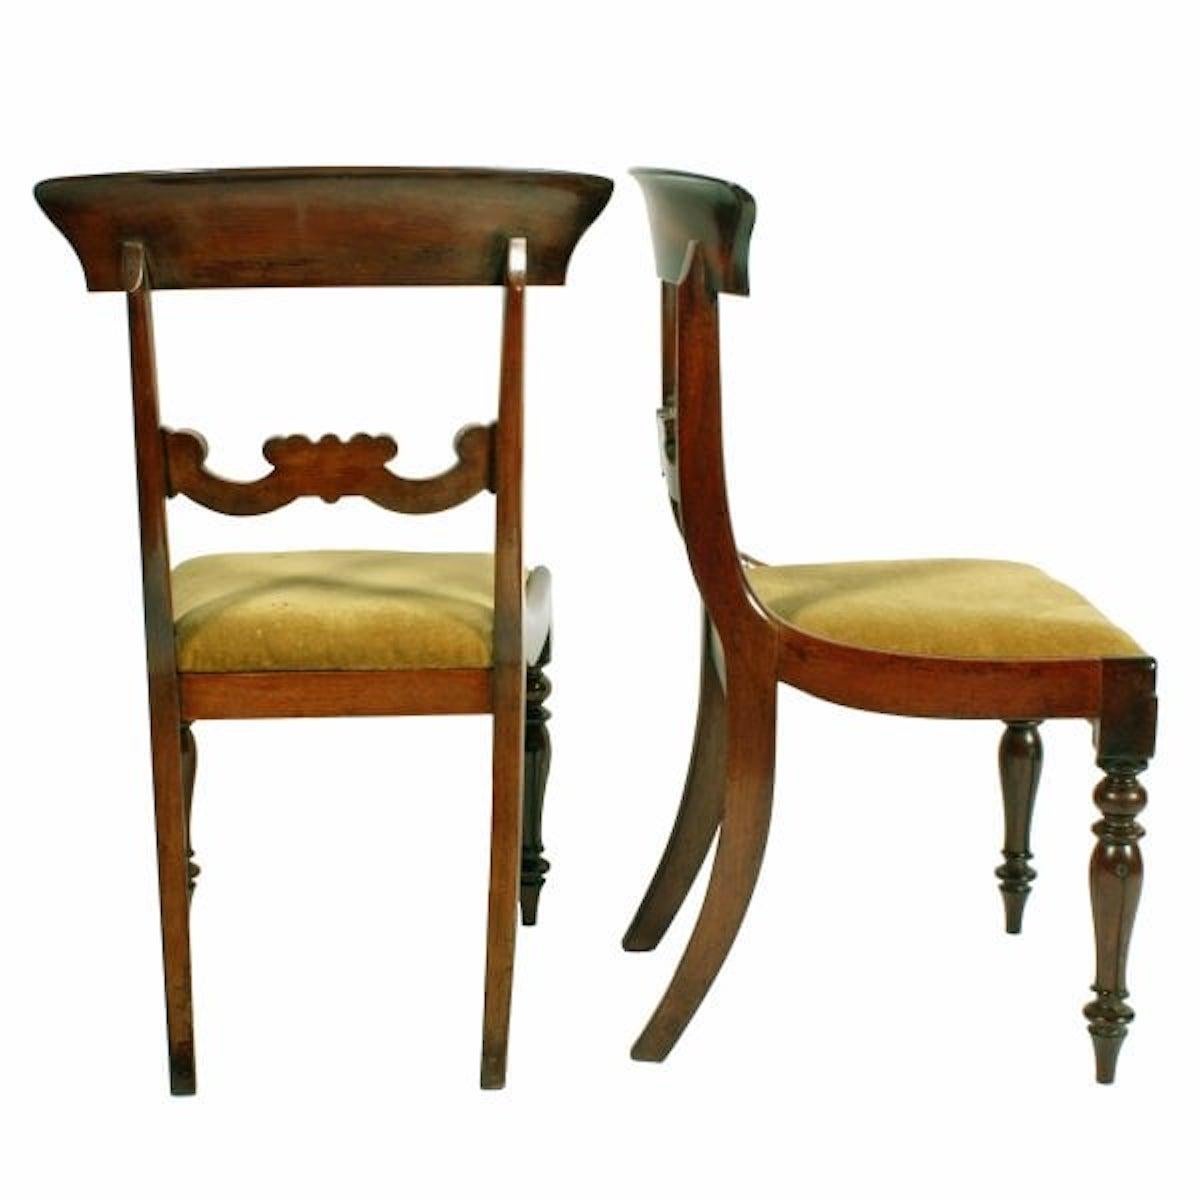 Ensemble de six chaises en acajou

Un ensemble de six chaises de salle à manger en acajou de style victorien du milieu du 19e siècle.

Les chaises sont dotées d'un large rail supérieur incurvé au niveau du dossier et d'un rail central sculpté de